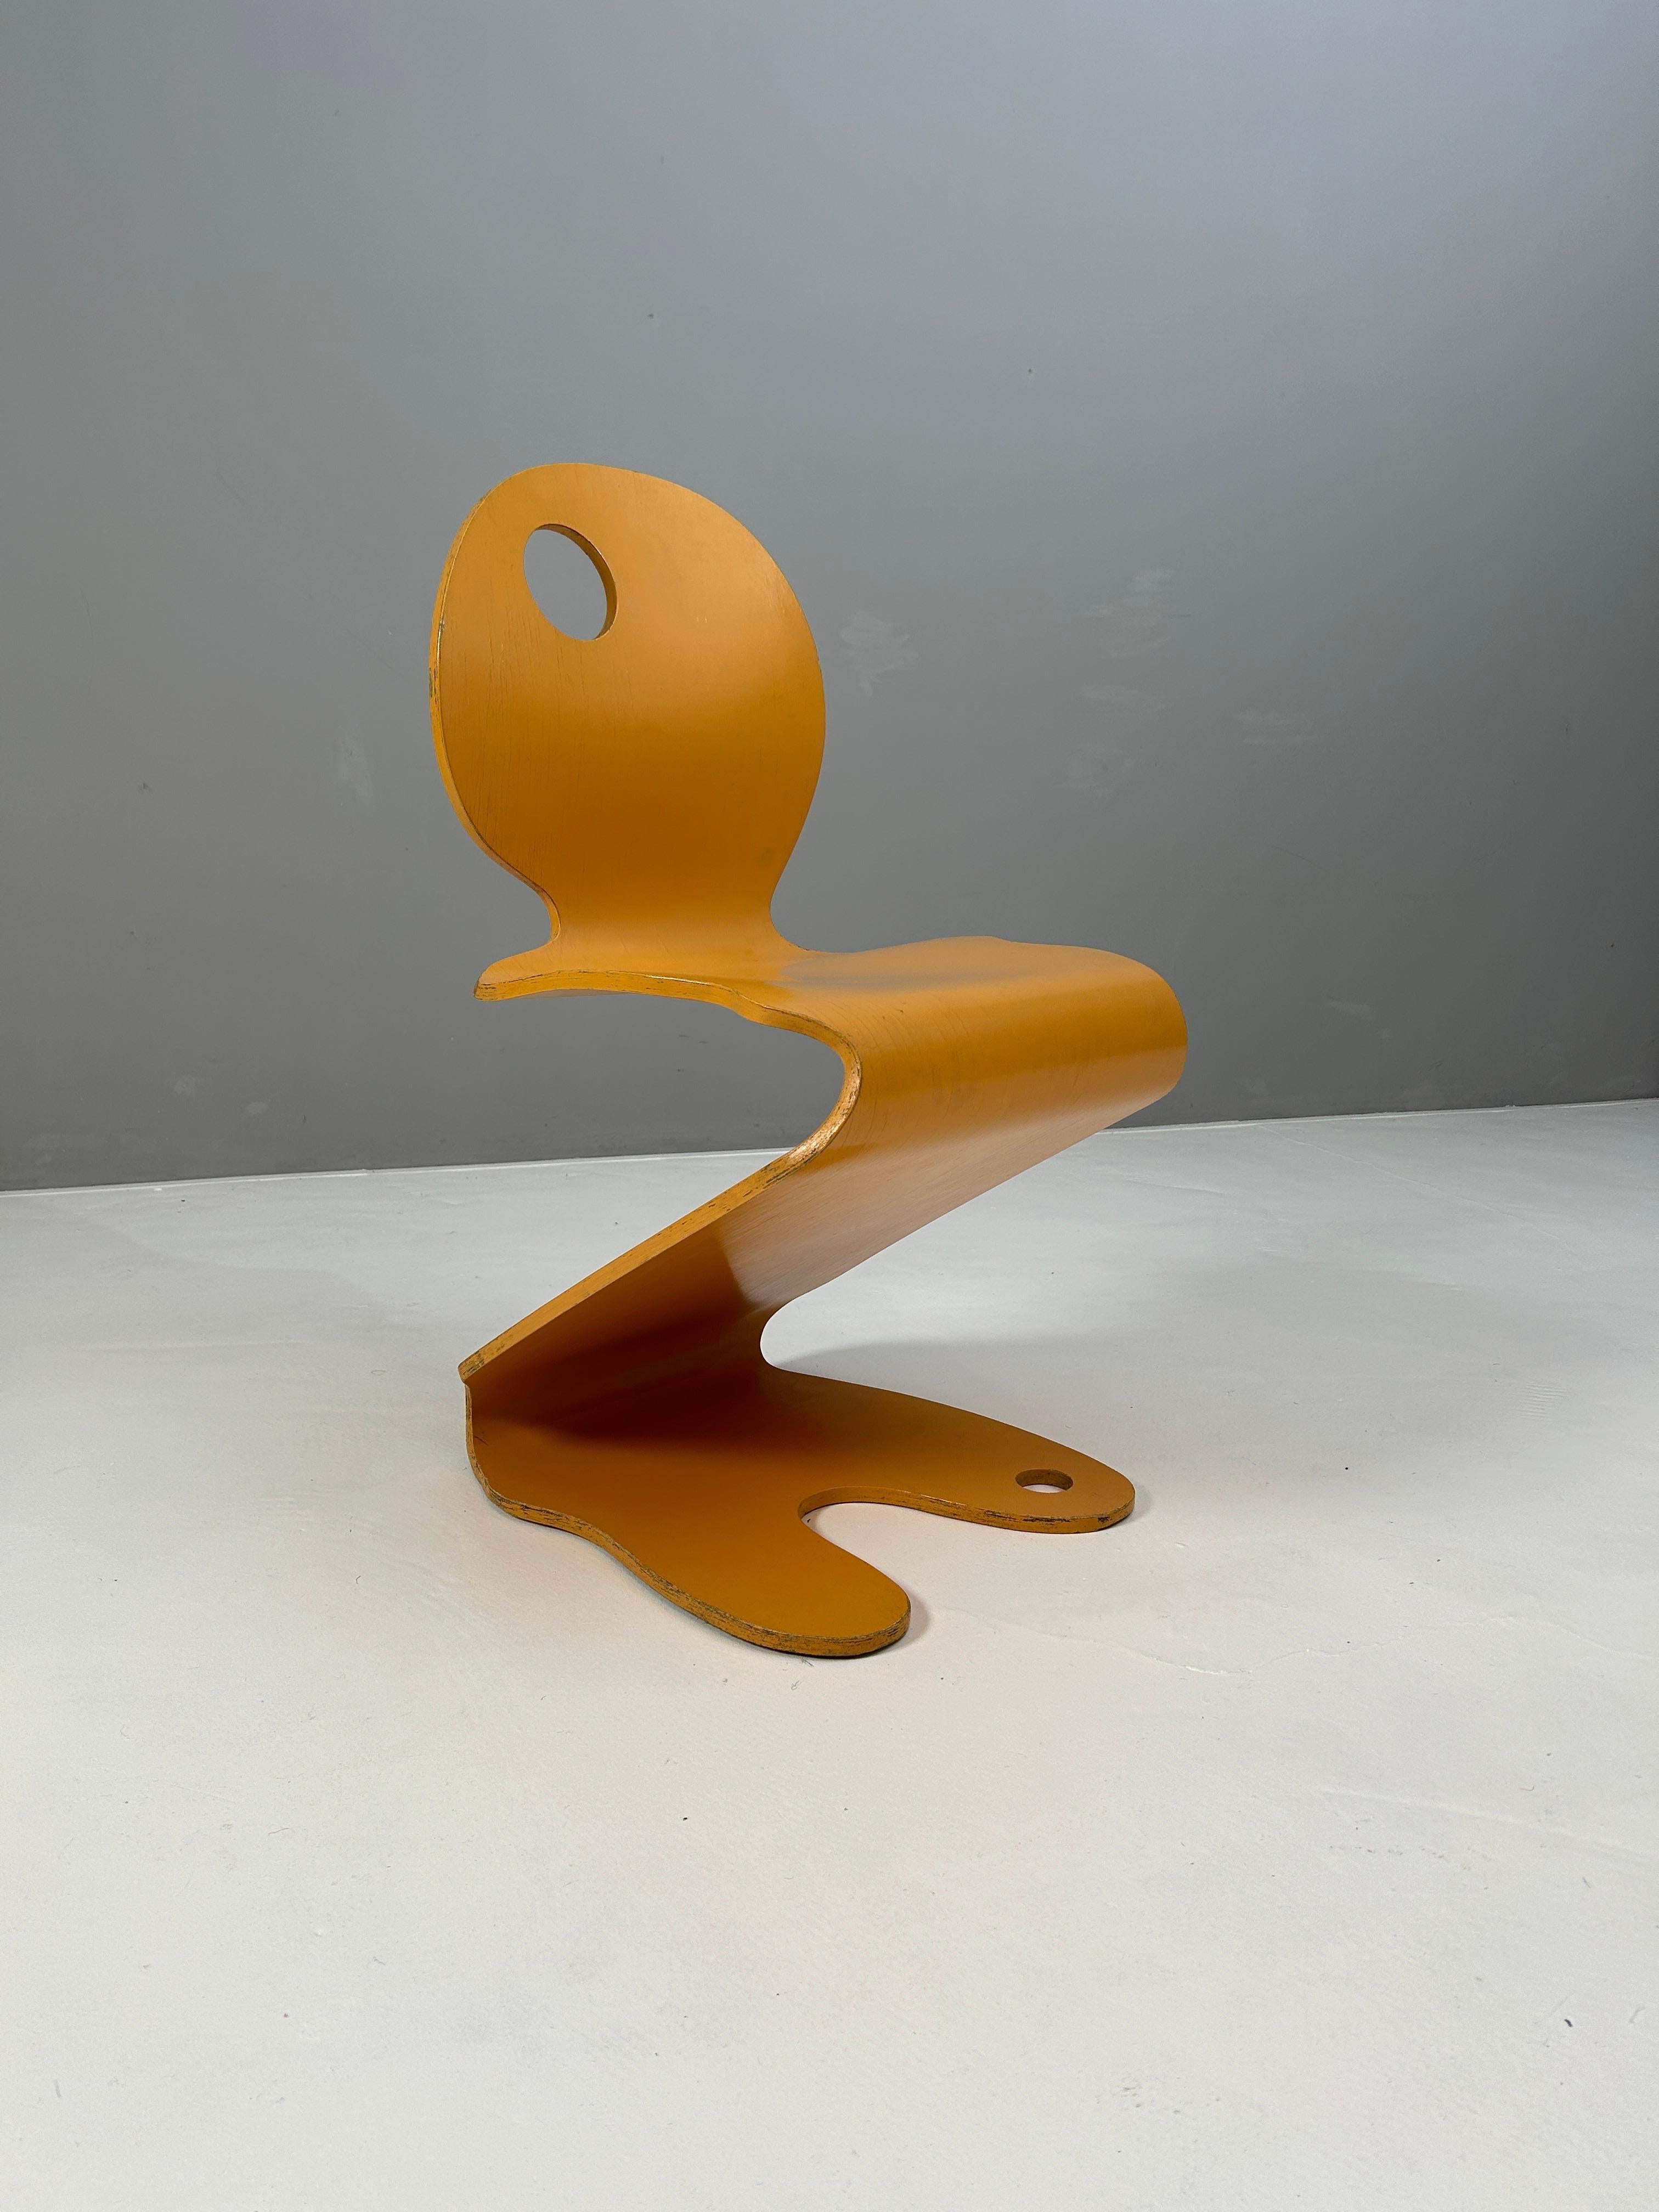 Verner Panton schuf diesen bequemen Stuhl nach dem Vorbild des S. Chair. Die ursprüngliche Farbgebung weist Gebrauchsspuren auf.
Formsperrholz, ockerfarbig